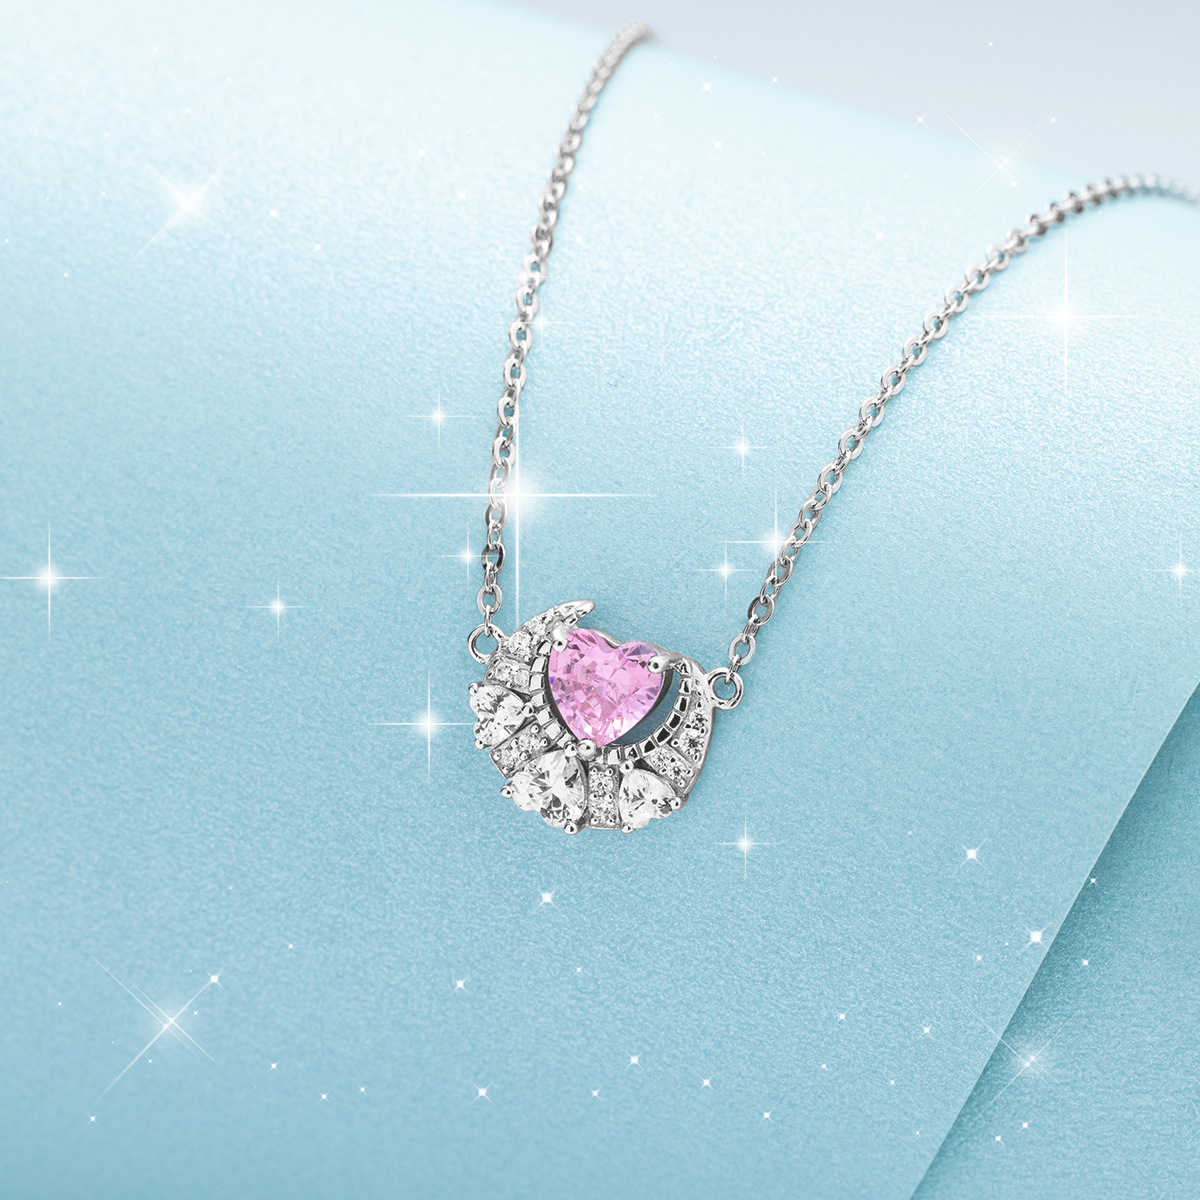 Ferris Wheel Original Heart Shaped Necklace Women's S925 Sterling Silver Pink Zircon Jewelry